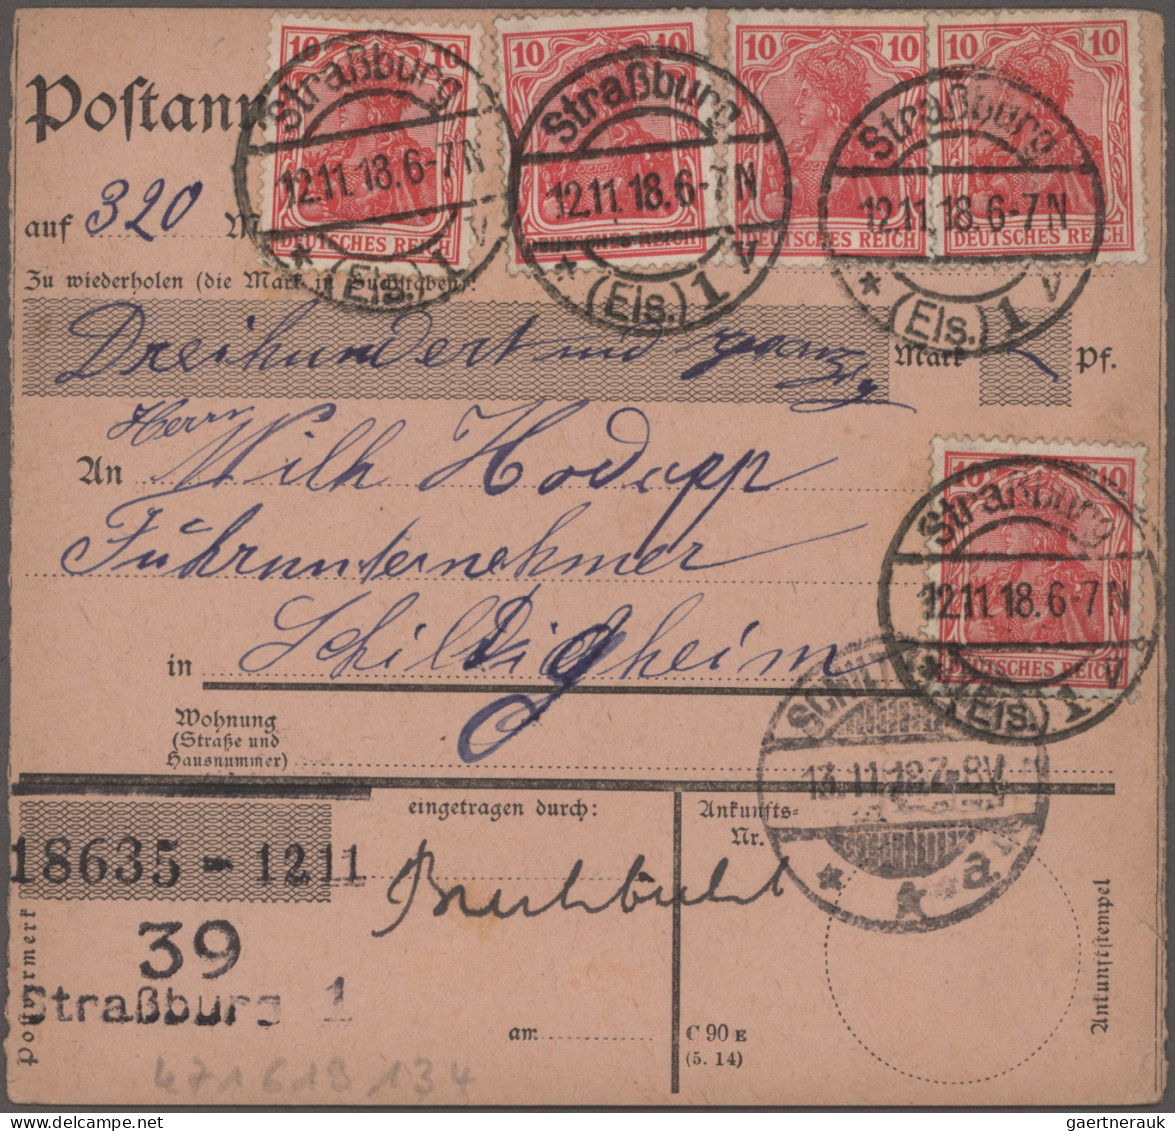 Deutsches Reich - Ganzsachen: 1918, Straßburg 4.11.-30.11., Partie von sieben Po